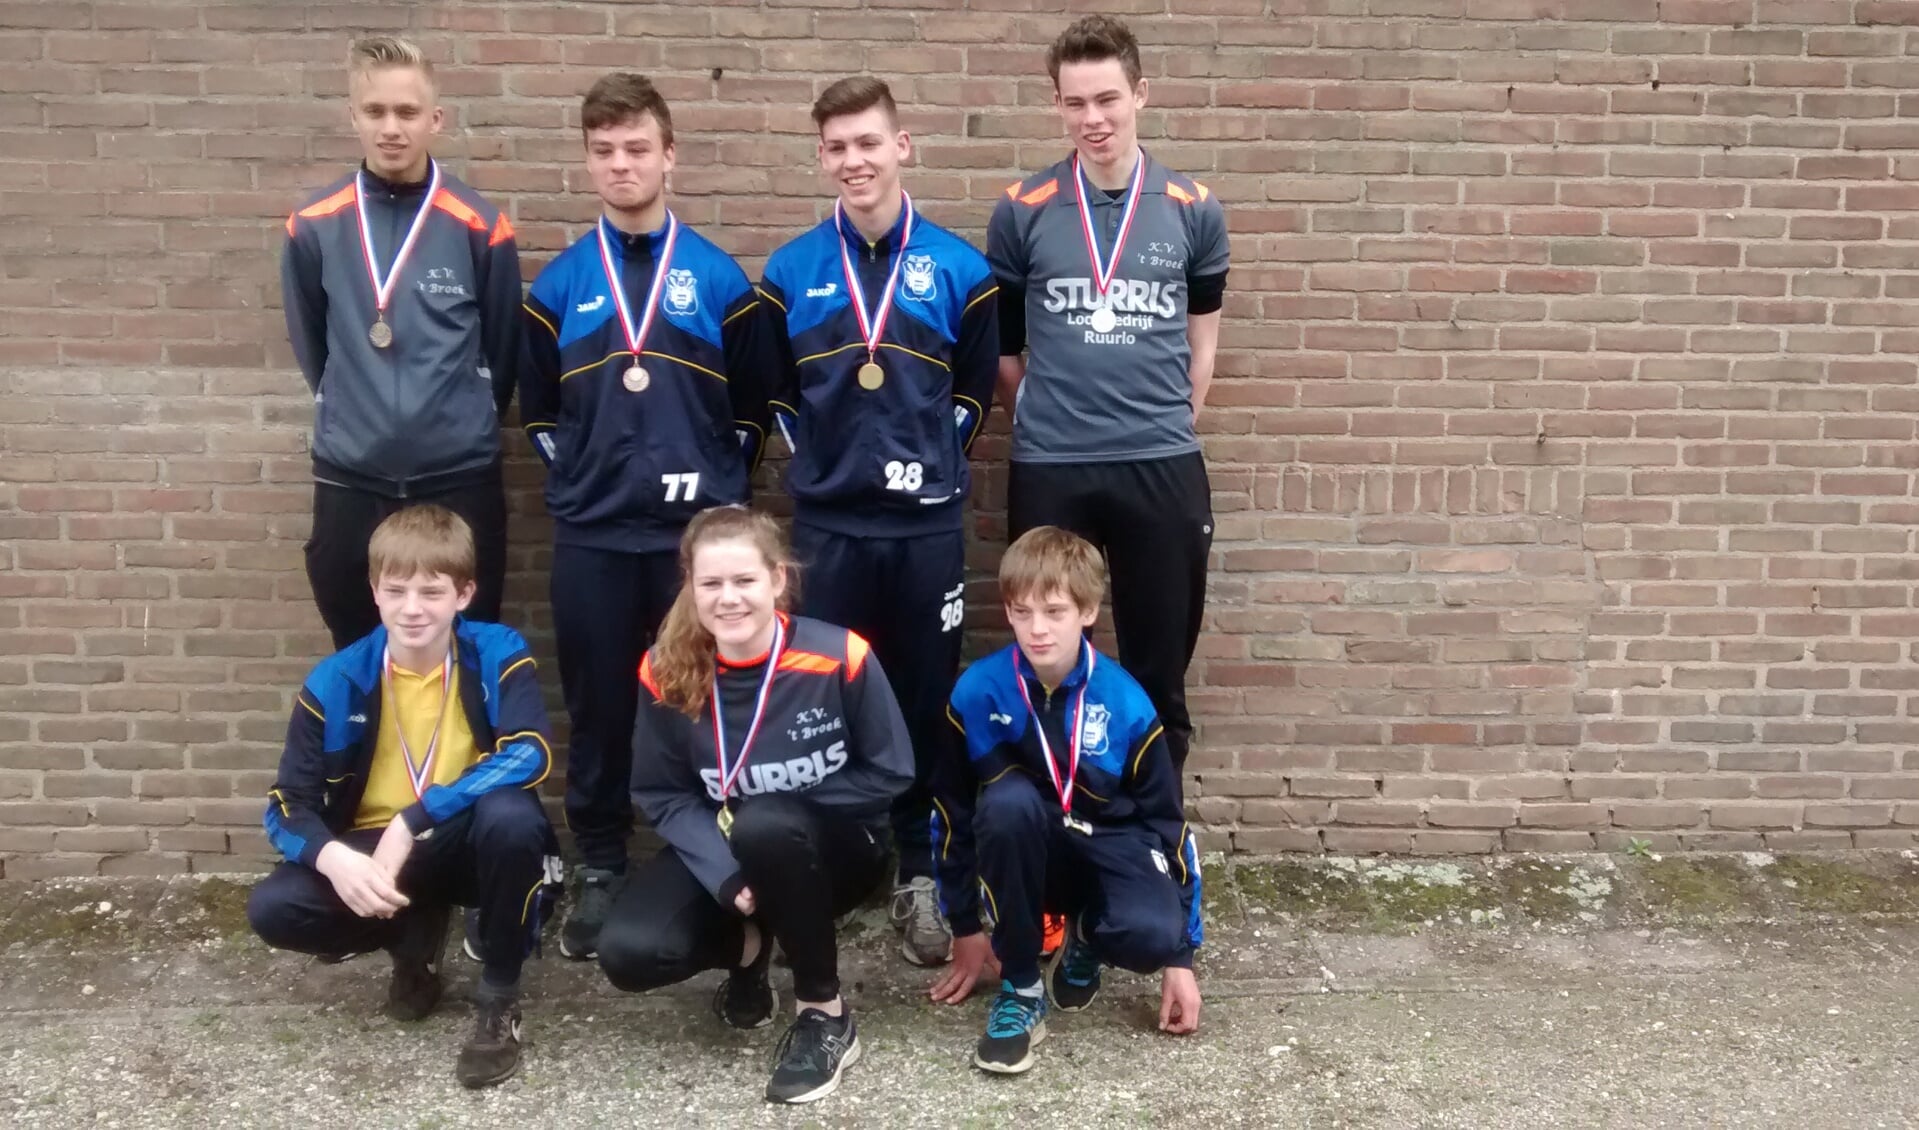 De winnaars bij de persoonlijke kampioenschappen jeugd, waaronder Wouter Rooks en Tim te Bogt. Foto: PR